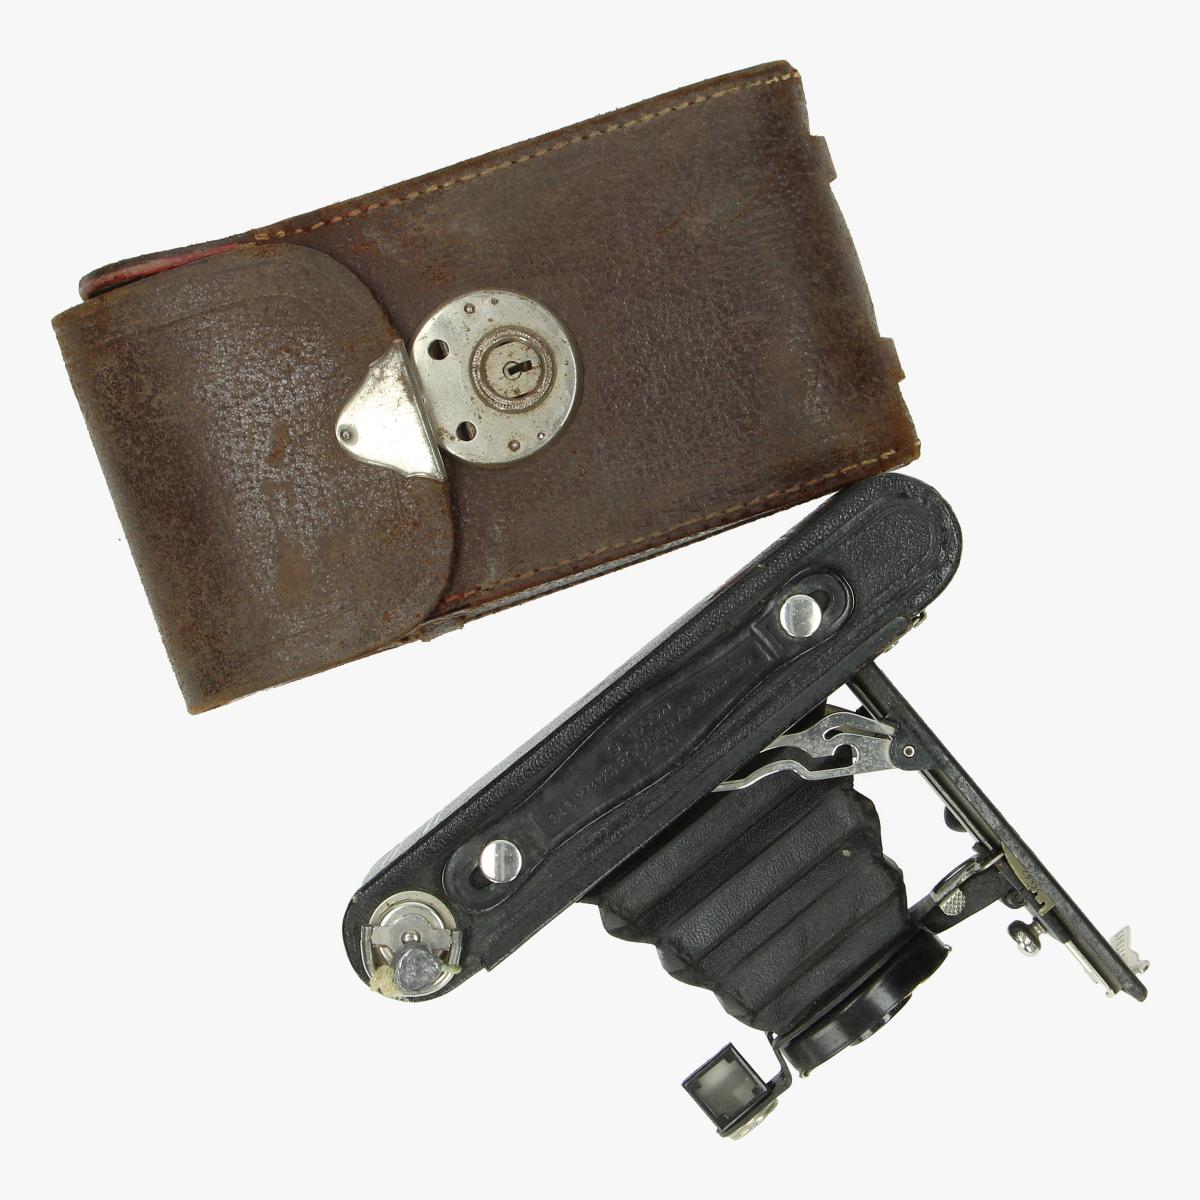 Afbeeldingen van fotocamera no°2 folding cartridge Hawk- eye model -B made in u.s.a by Eastman kodak Co Rochester N.Y use film no. 120